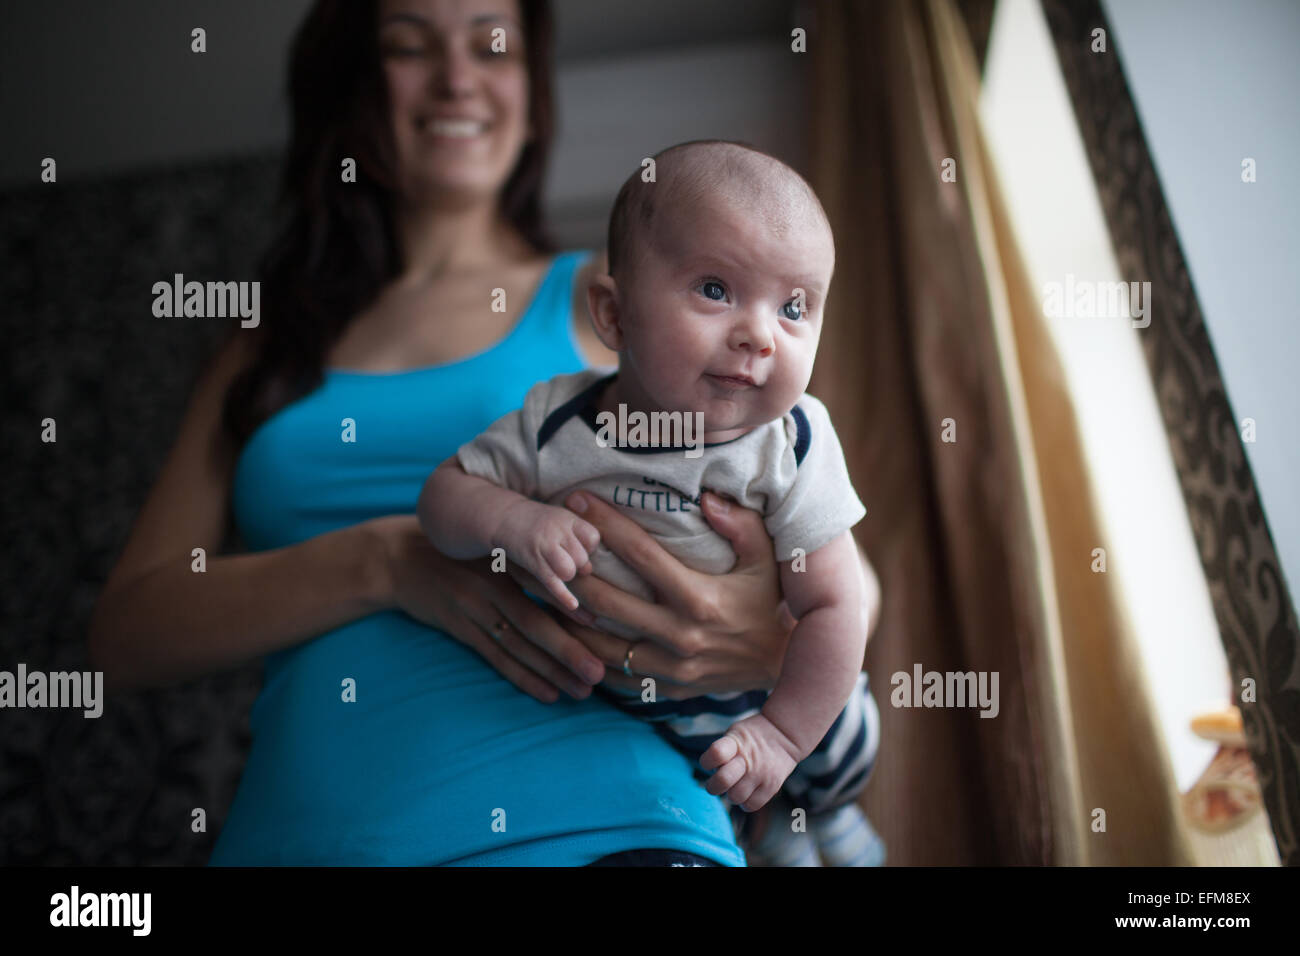 Jeune maman avec bébé Banque D'Images